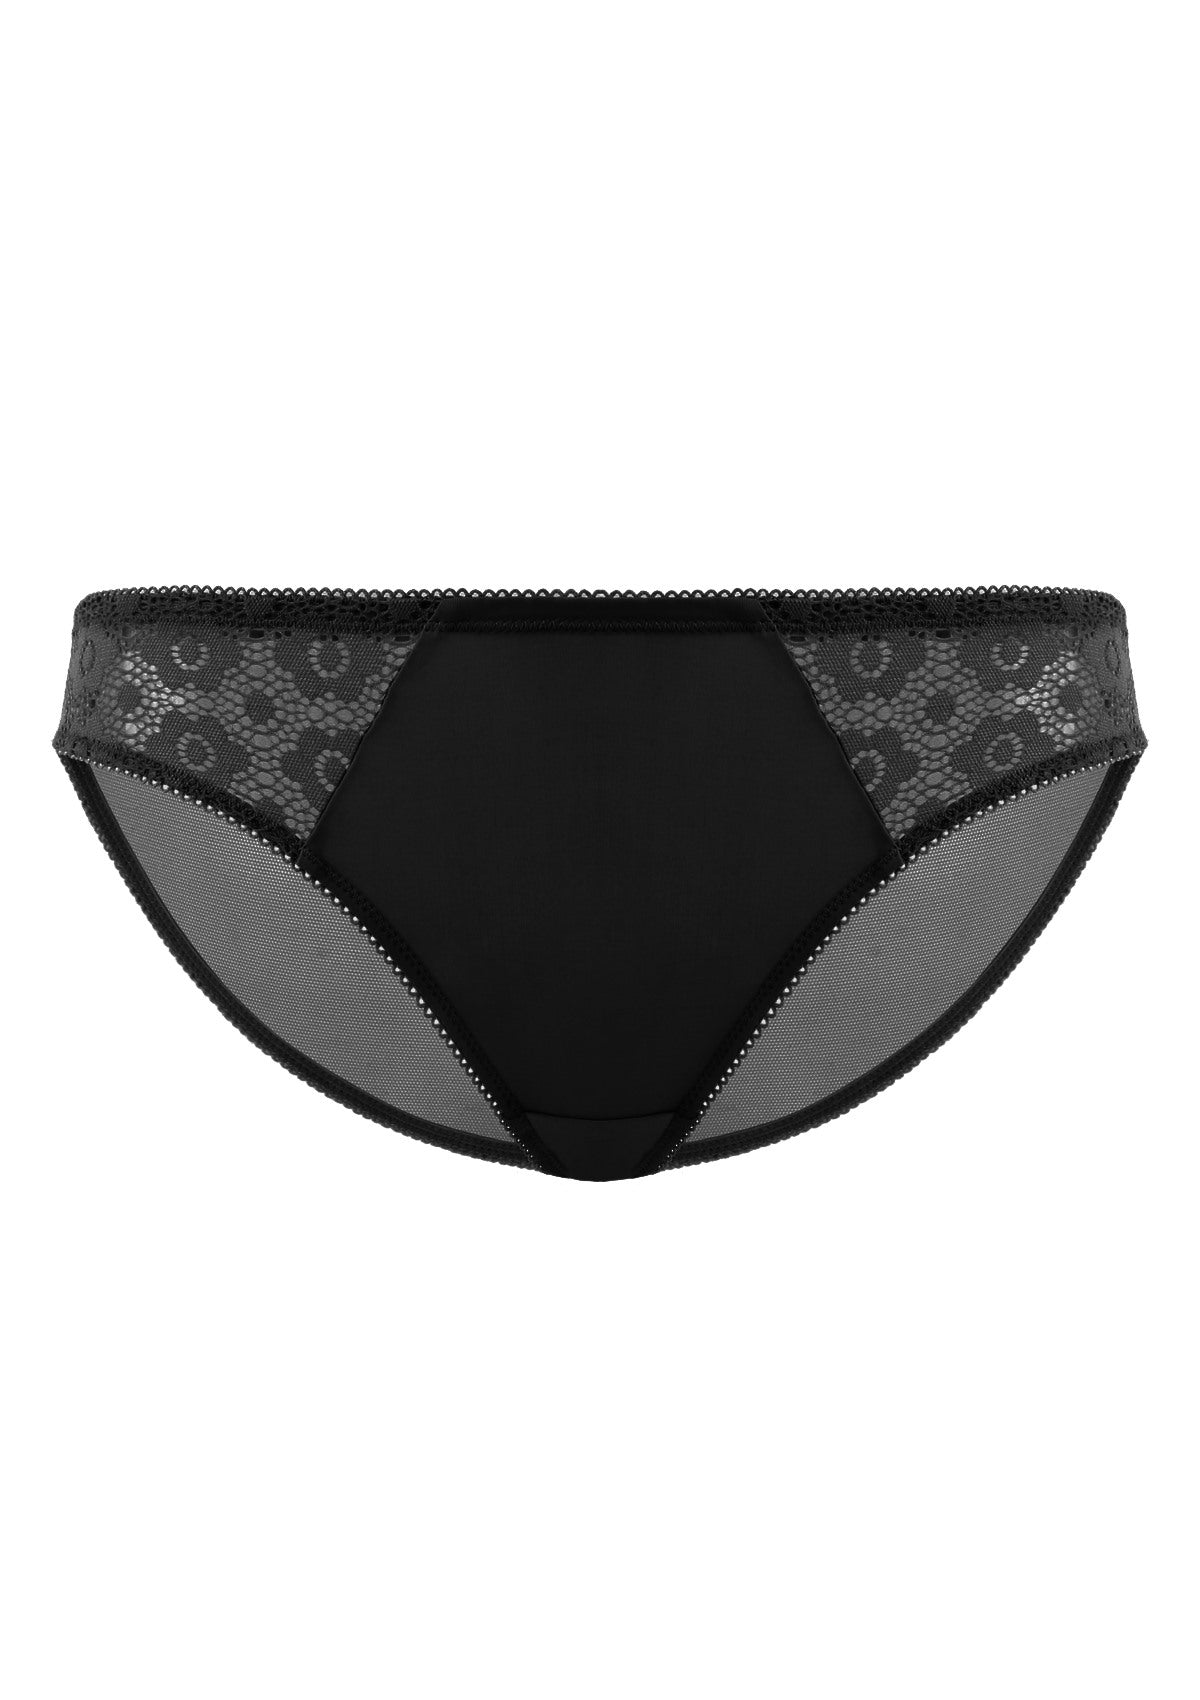 HSIA Serena Comfortable Trendy Lace Trim Bikini Underwear - L / Nude